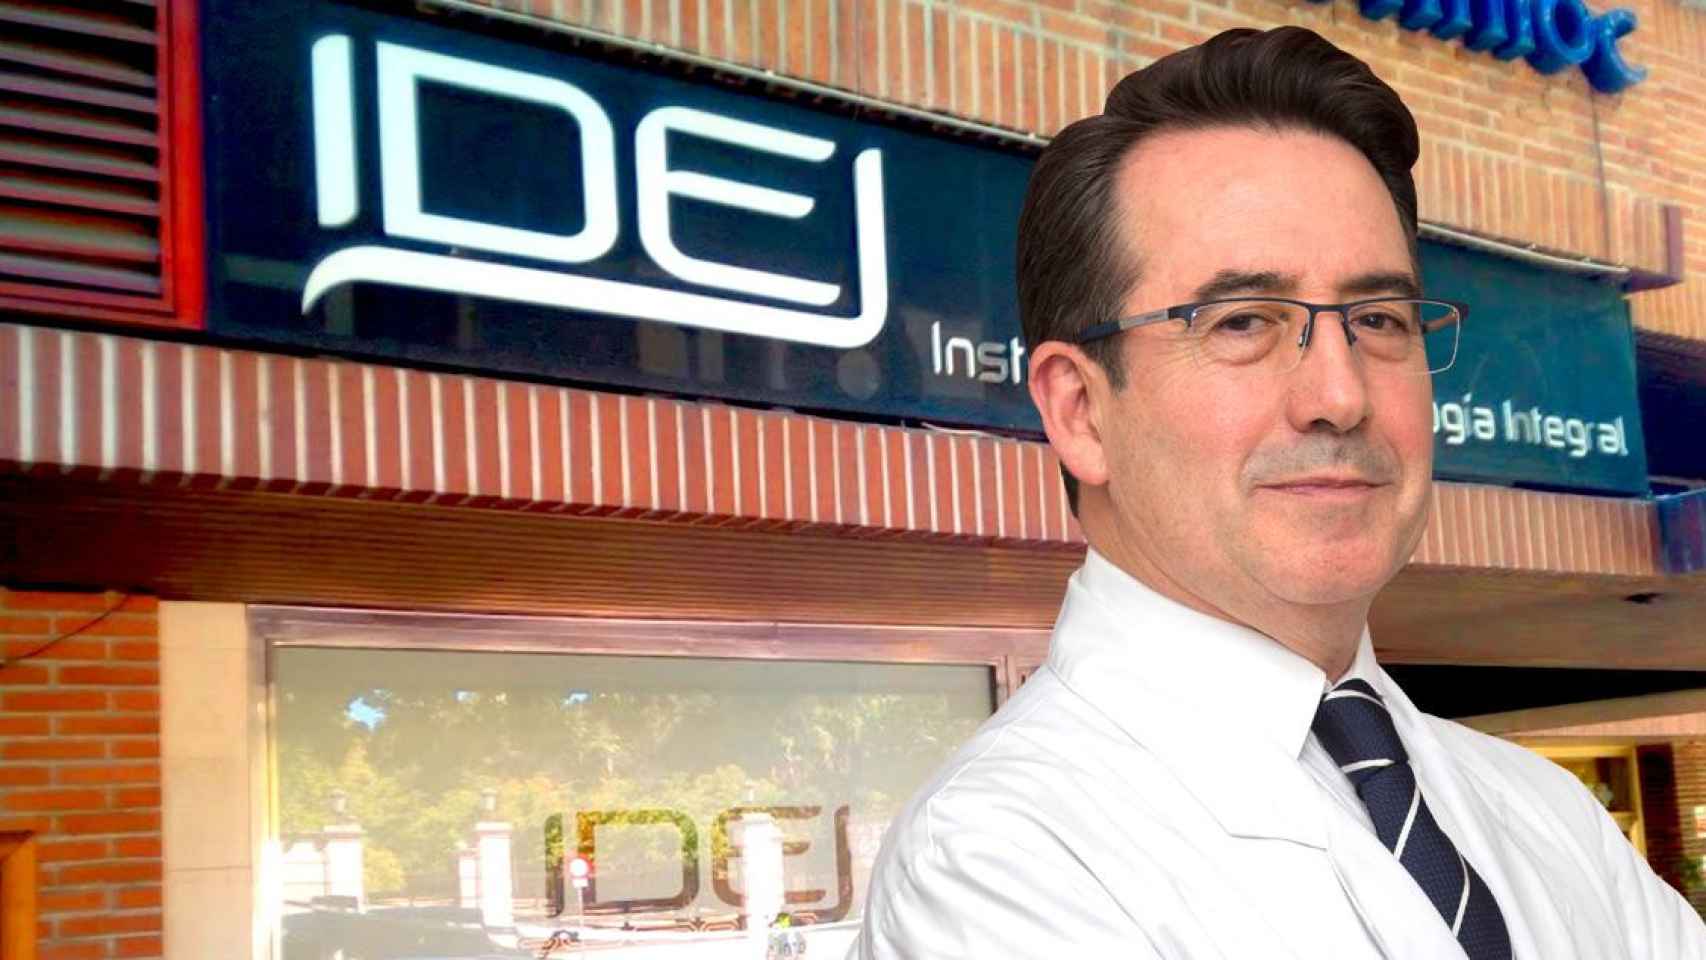 Miguel Sánchez Viera, director del Instituto de Dermatología Integral (IDEI), médico dermatólogo y especialista en injertos capilares